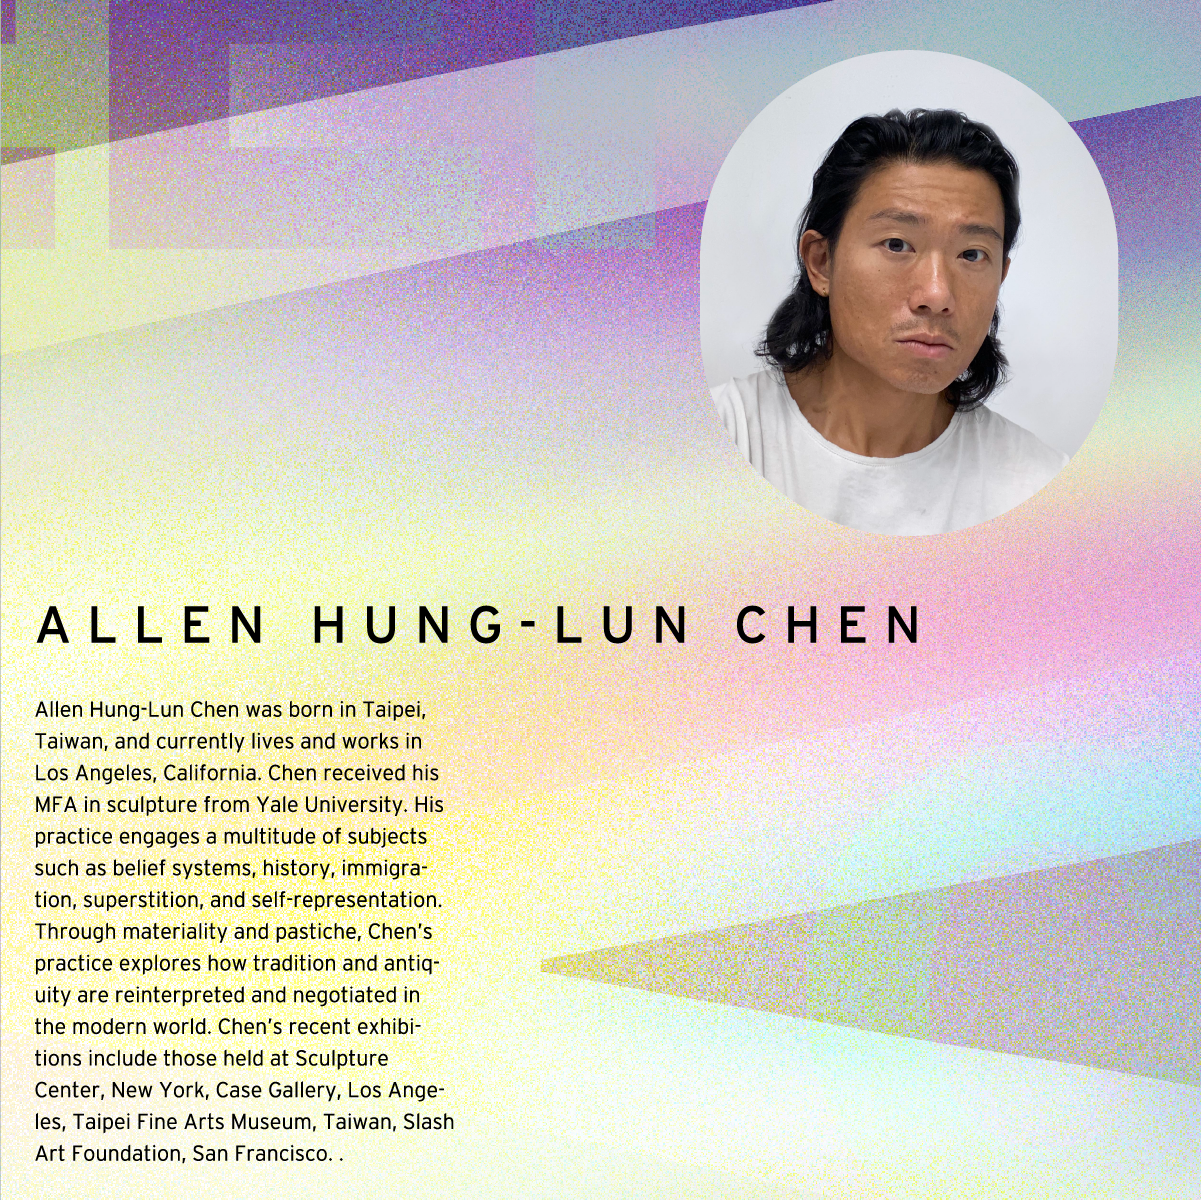 CSULB School of Art - Graduate Critique Week - Visiting Artist Allen Hung-Lun Chen